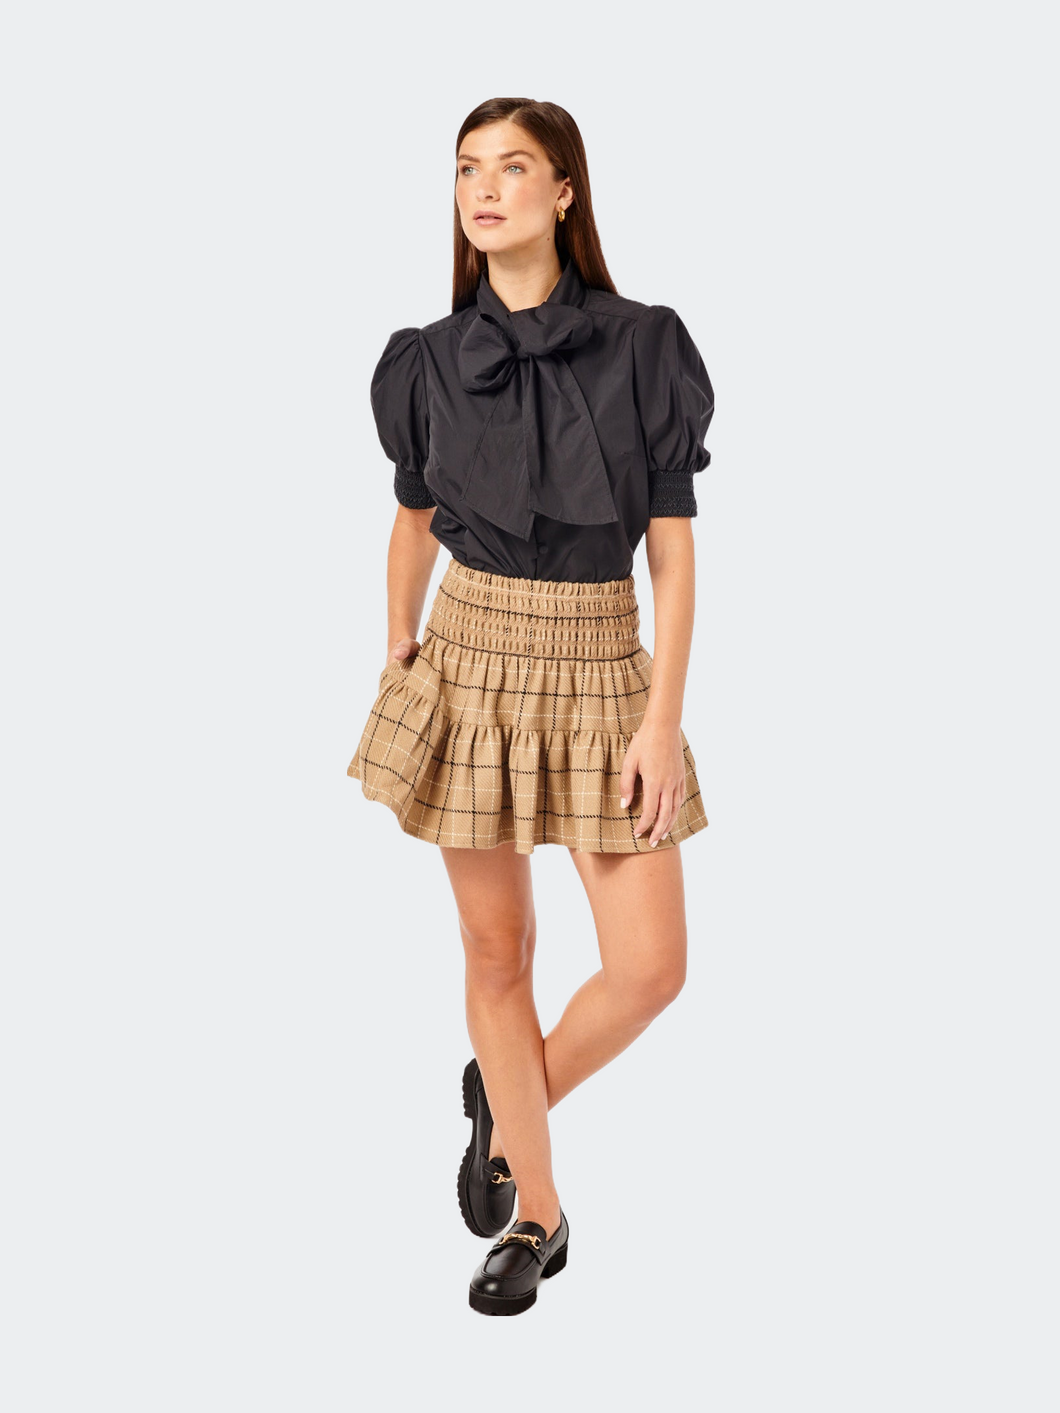 The Kylie Skirt - Tan Plaid